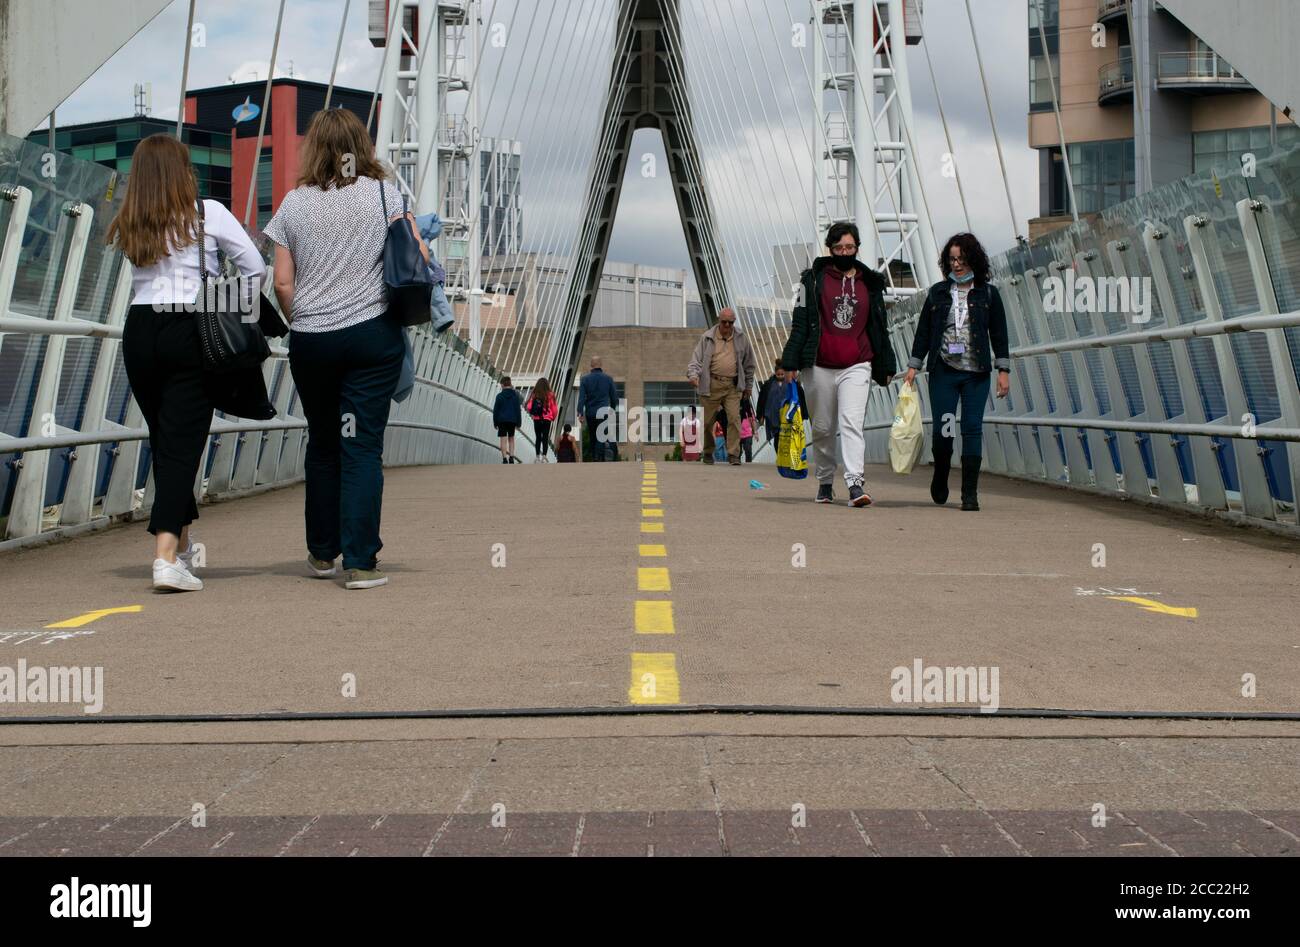 Ascensore il ponte con linea di demarcazione e cartello che mostra la direzione delle persone che camminano per ridurre al minimo la distanza sociale e di contatto durante la pandemia. Manchester, Regno Unito Foto Stock